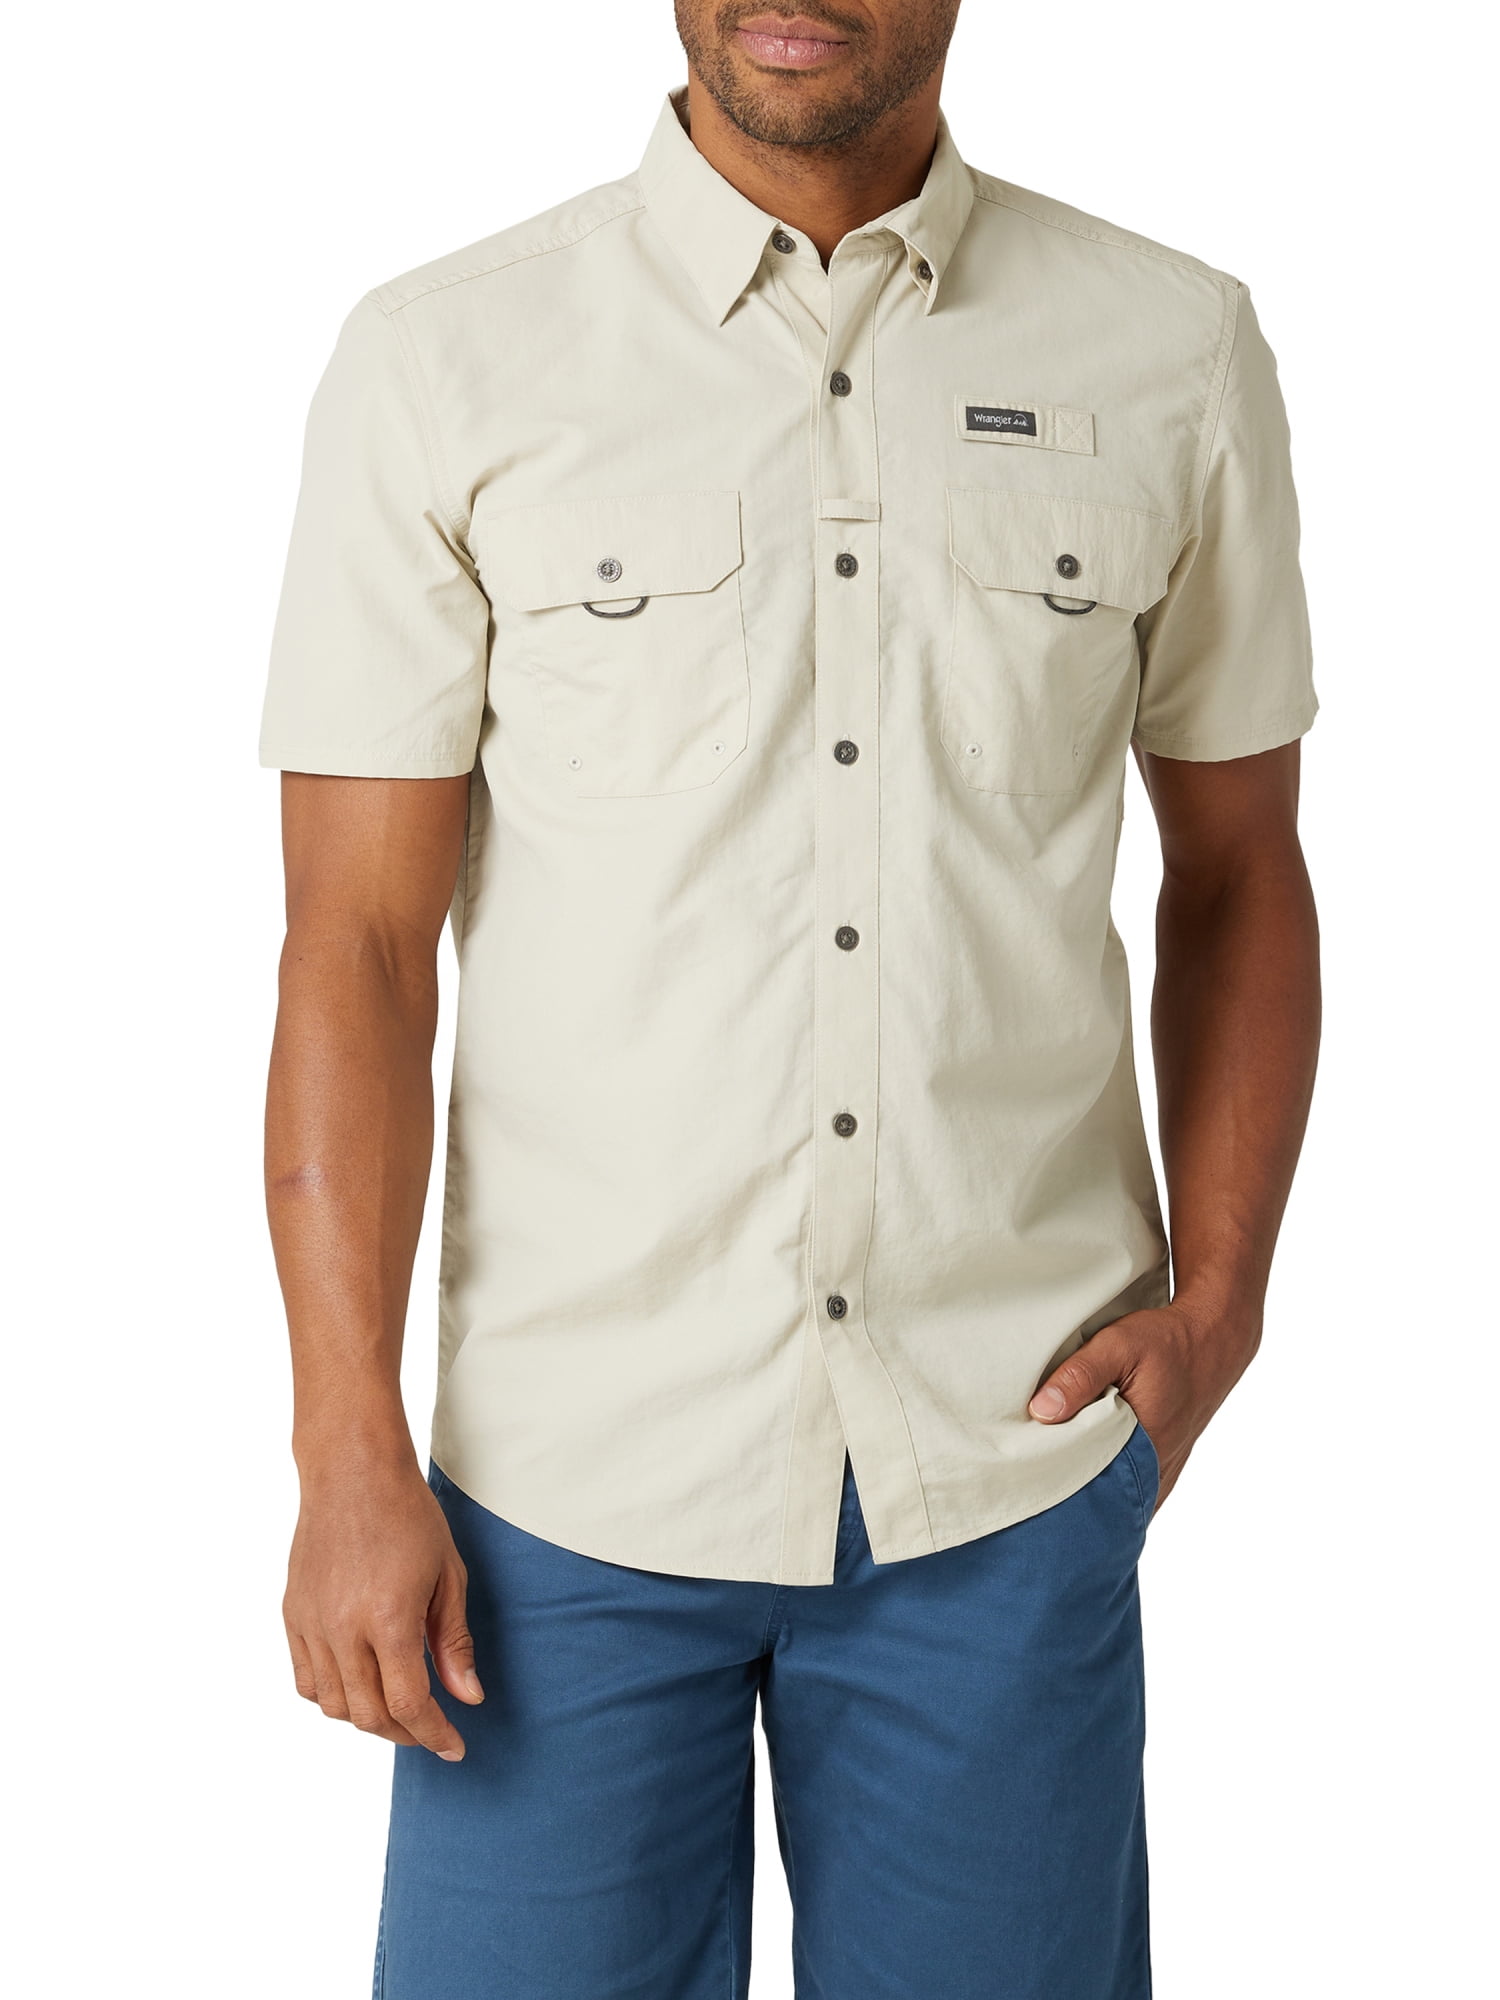 Wrangler Men's Short Sleeve Fishing Shirt, Sizes S-5XL 